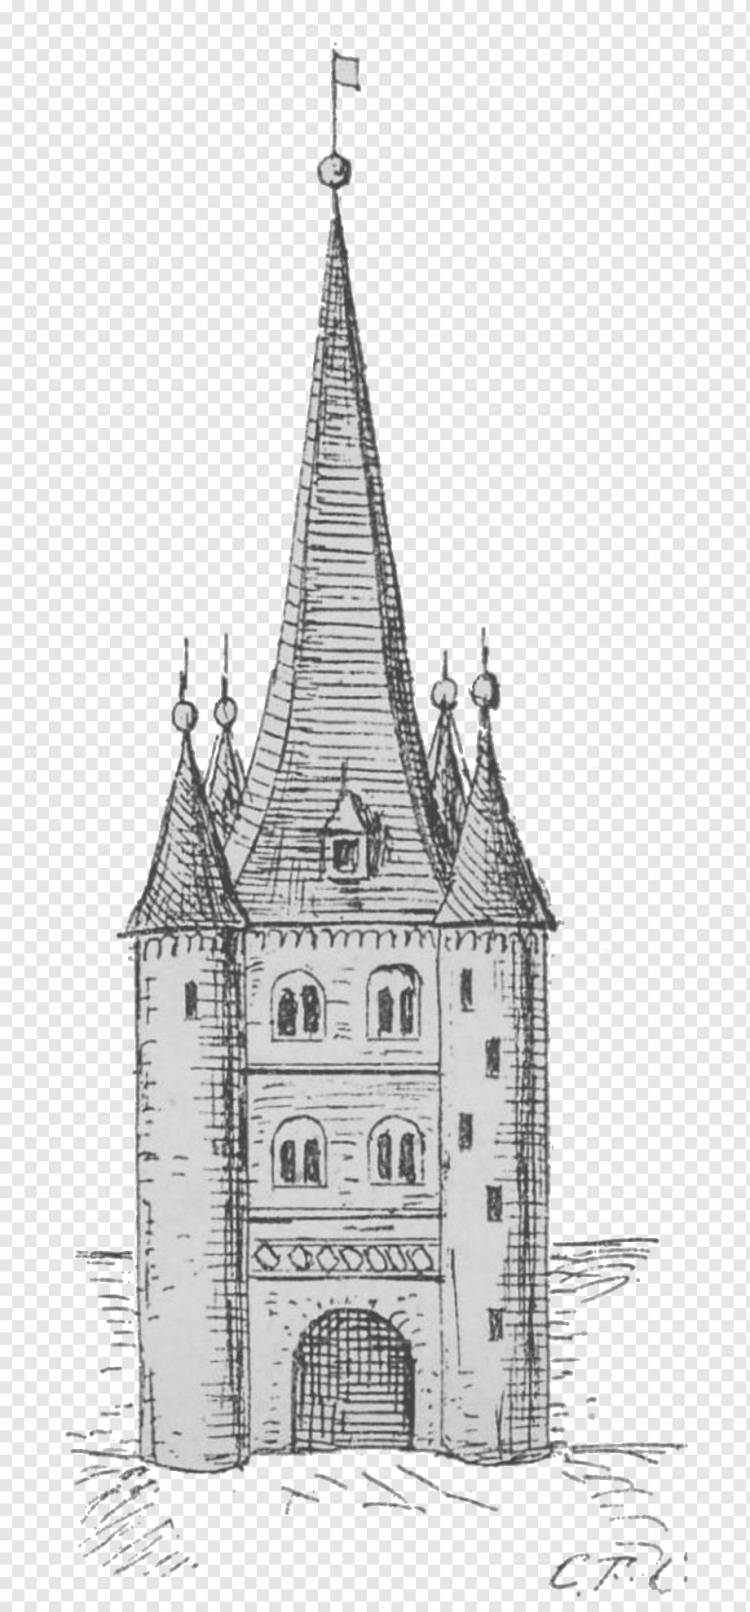 Башня Средневековая архитектура Рисование Готическая архитектура Здание, гамбургская печать, здание, монохромный, средневековая архитектура png